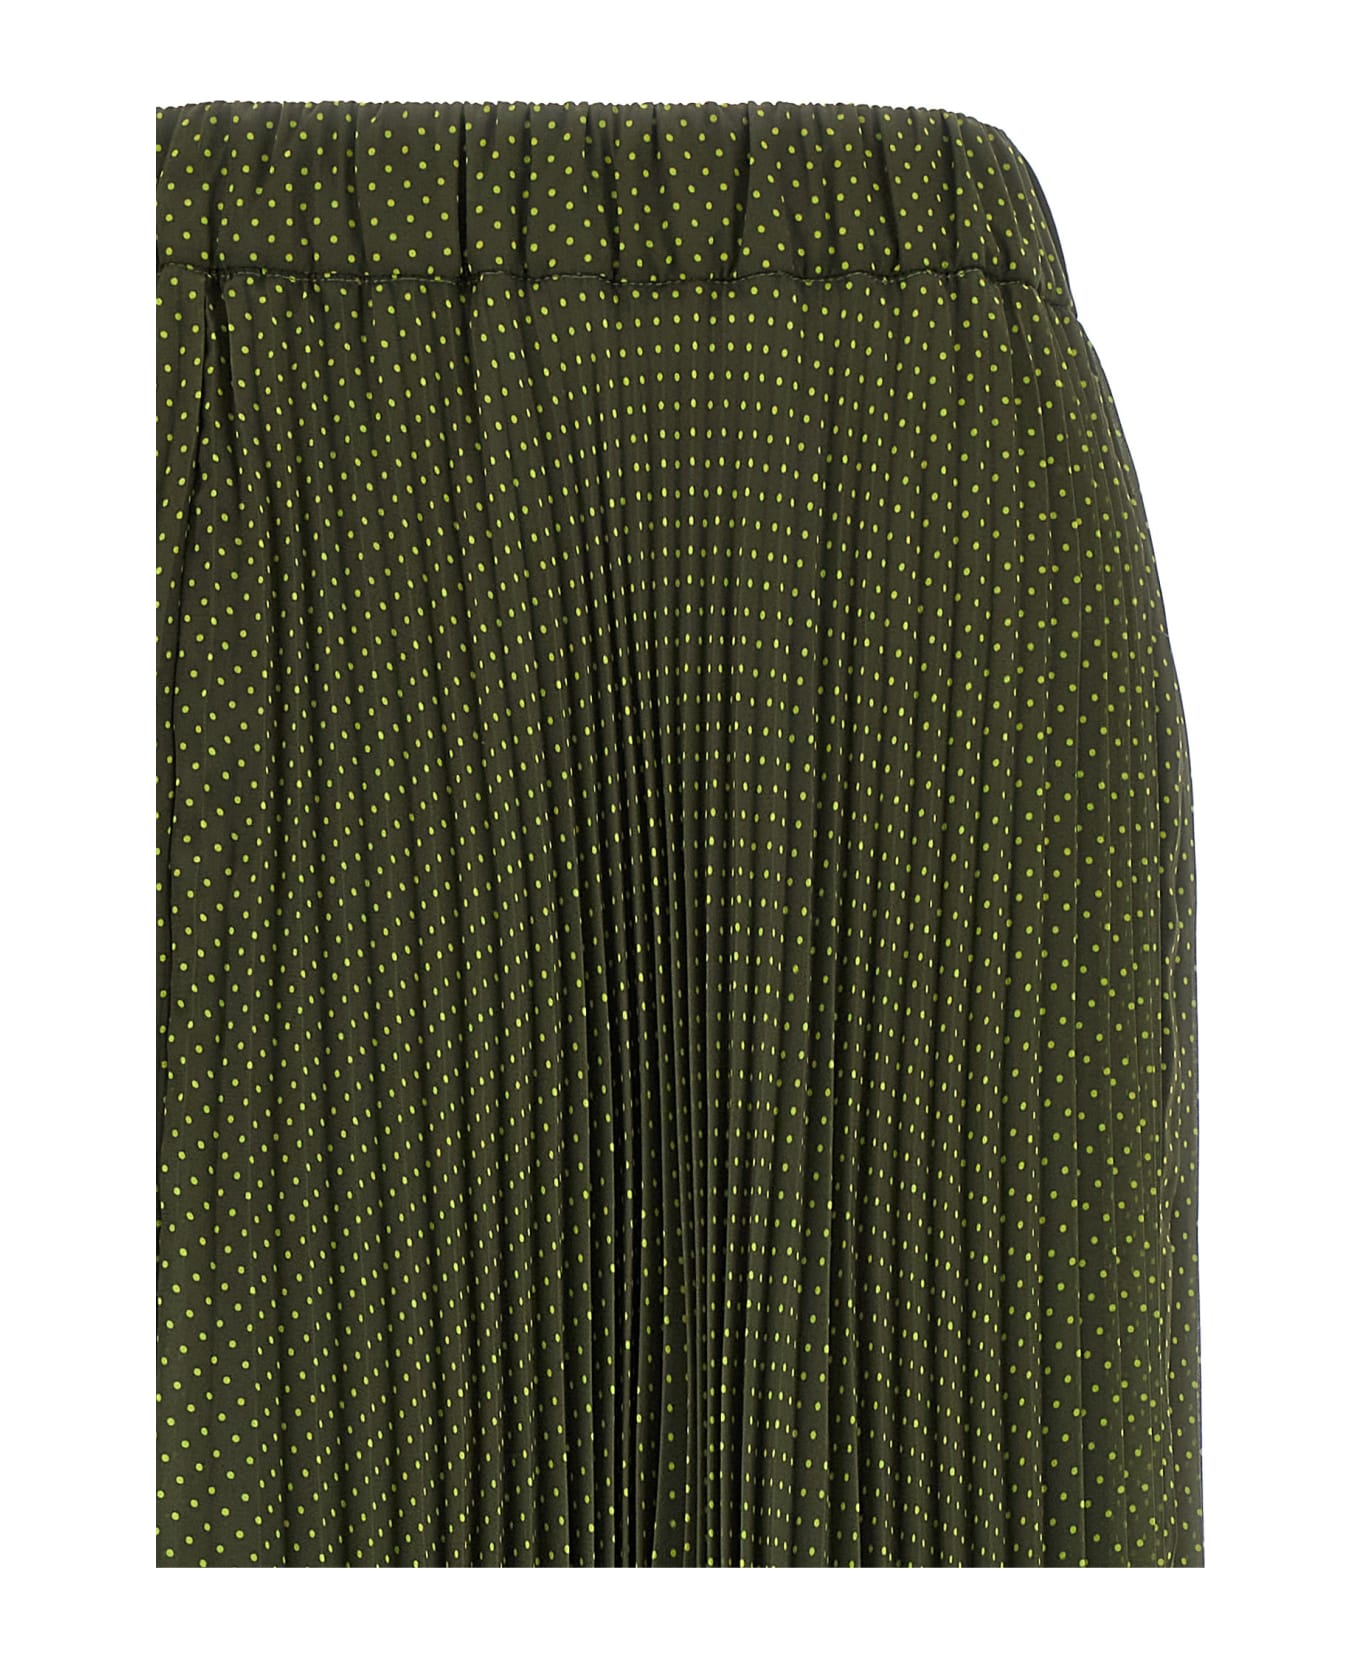 Parosh Pol Polky Plisè Skirt - Green スカート